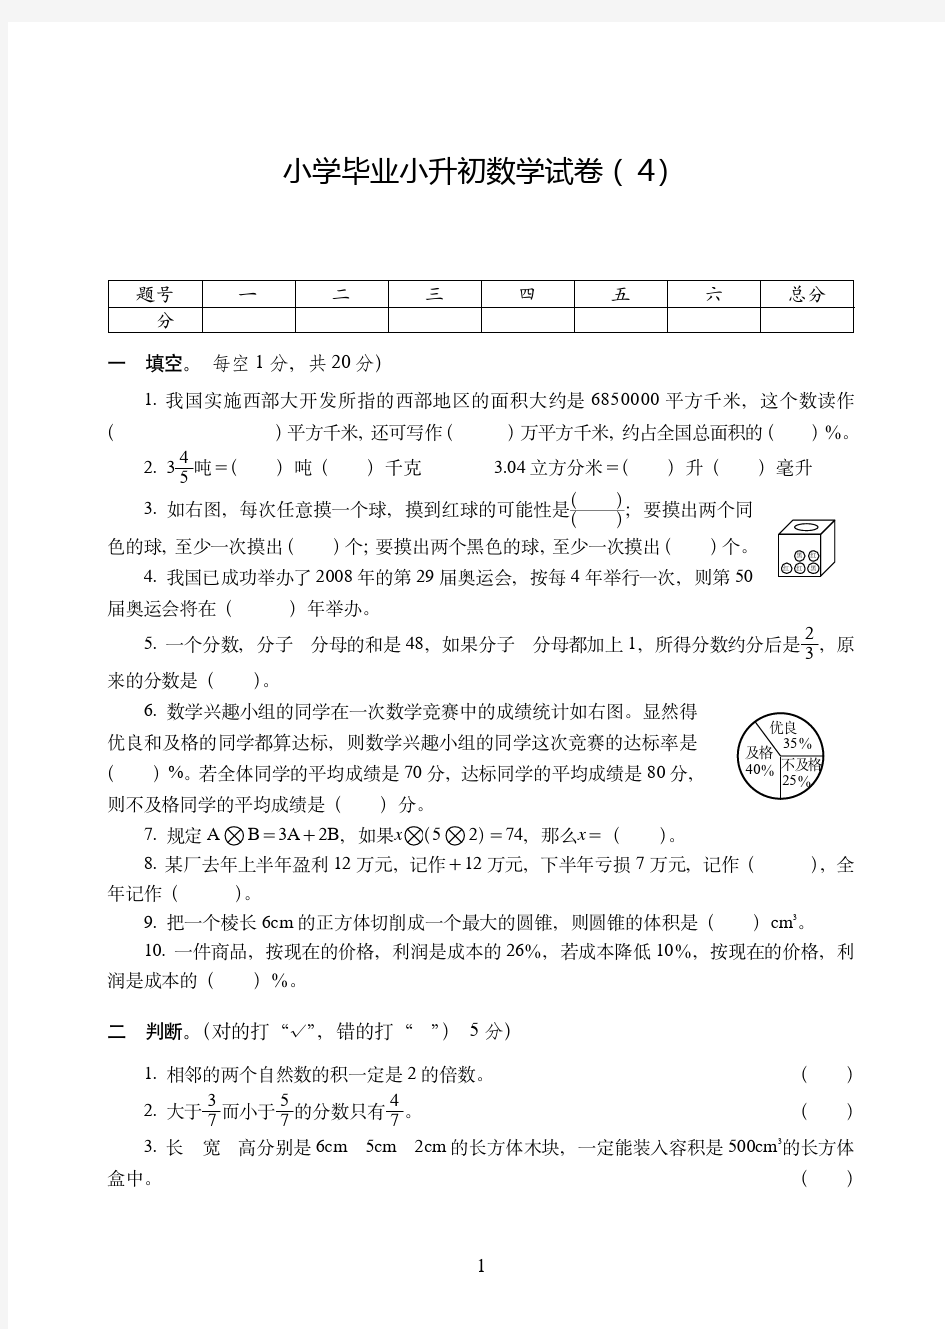 天津市2019-2020小学毕业小升初数学试卷附试题详细答案( 4)